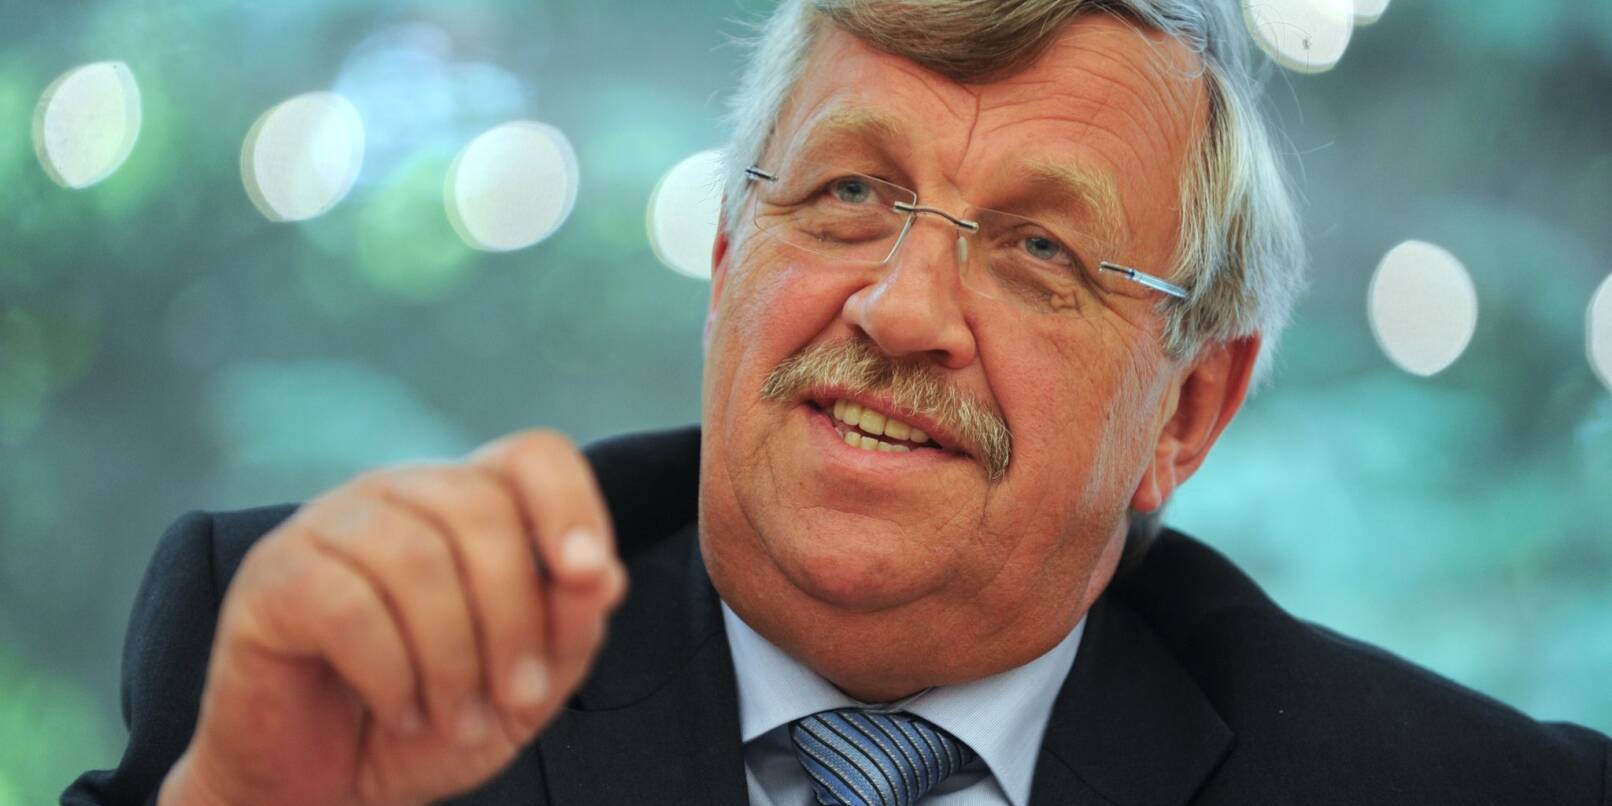 Der im Juni 2019 ermordete Kasseler Regierungspräsident Walter Lübcke (CDU) auf einer Veranstaltung.